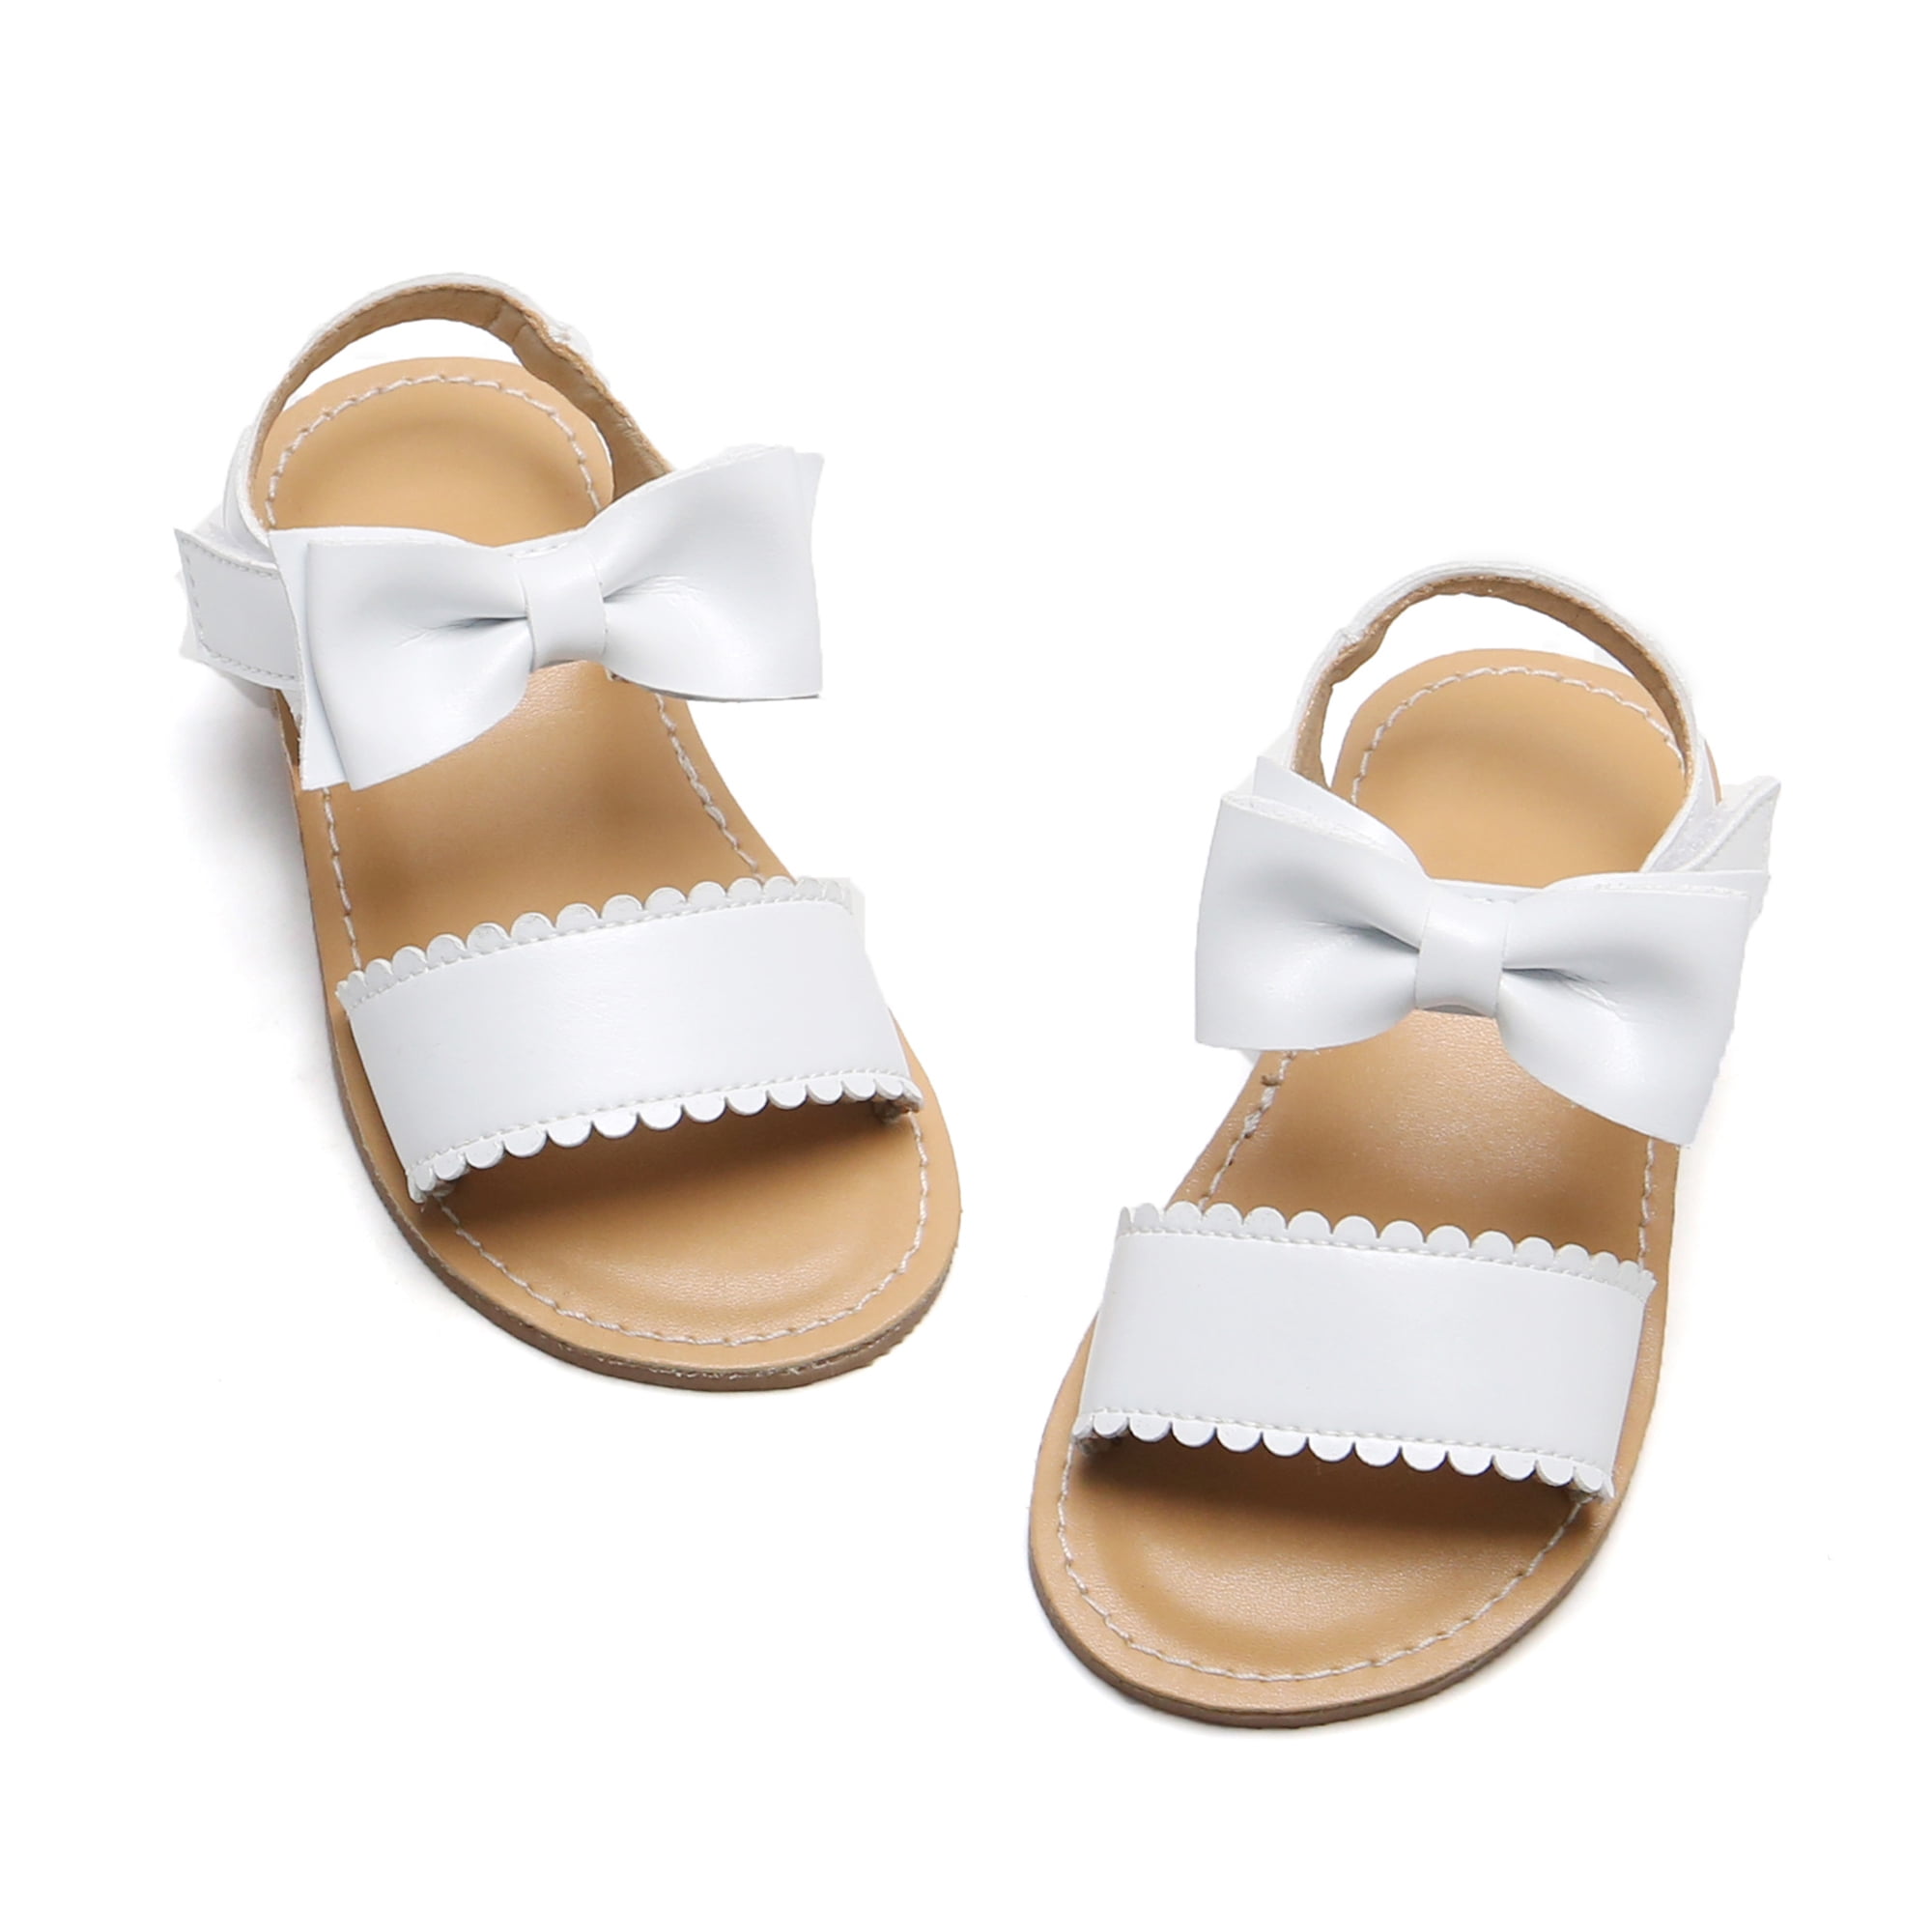 Toddler Girl White Sandals Size 6 Easter Flower Girl Dress Shoes Open ...